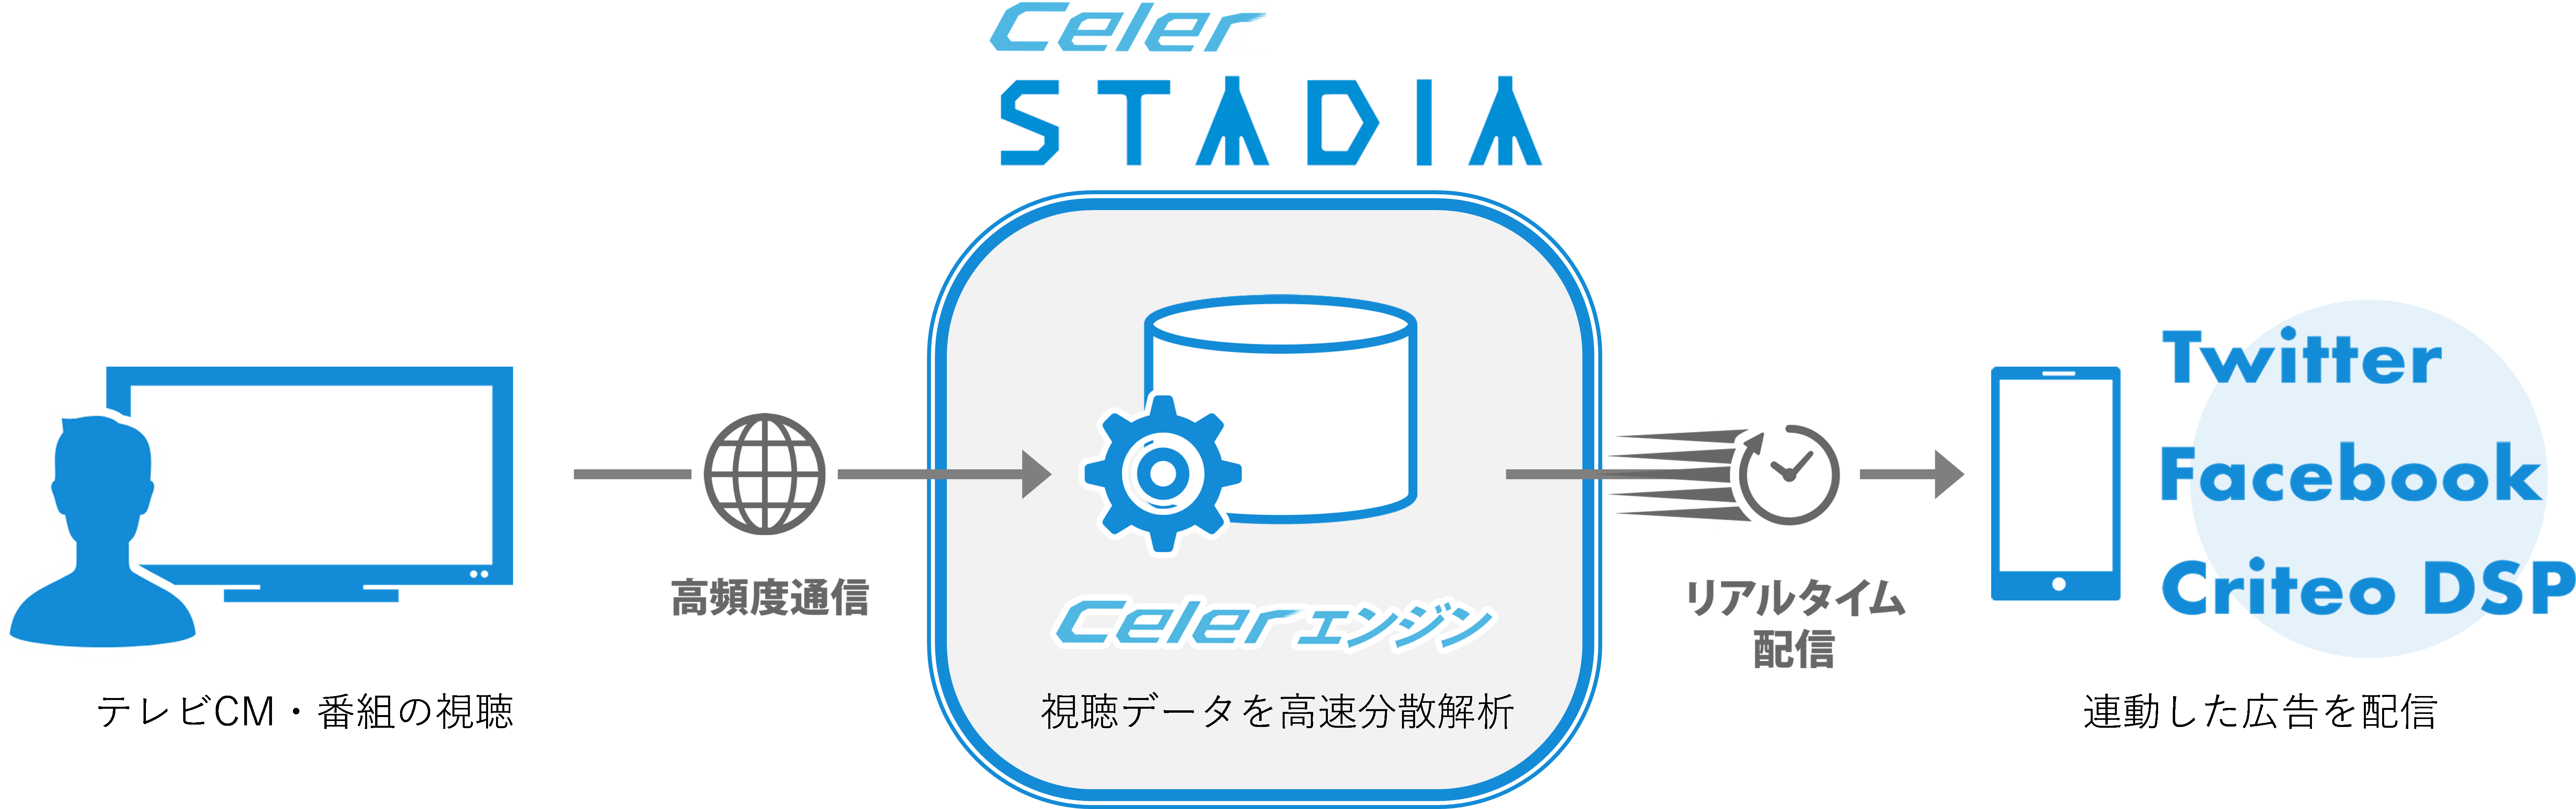 電通、テレビ番組・CM視聴者に視聴後最速30分でTwitter、Facebook、Criteo等で関連広告を配信する「Celer STADIA」の提供を開始